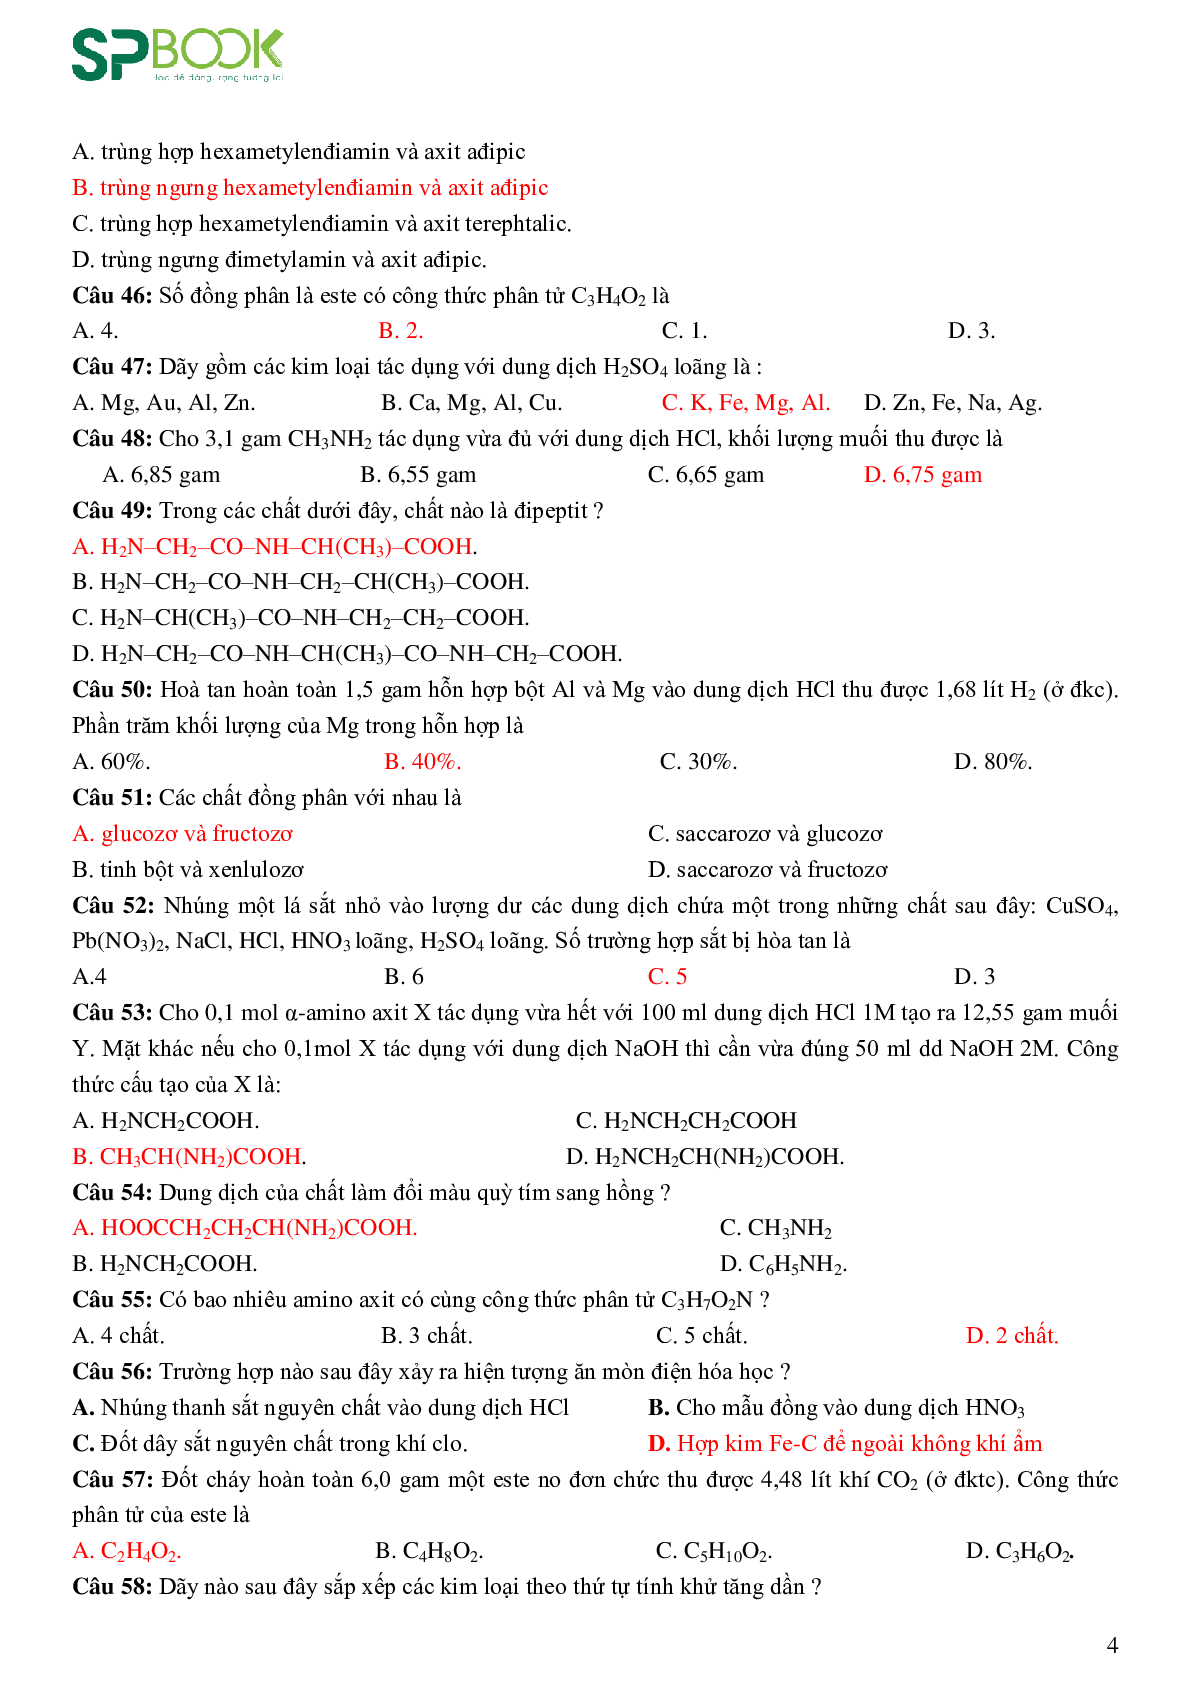 Bộ 200 câu hỏi ôn tập học kỳ 1 môn Hóa học lớp 12 có đáp án (trang 4)